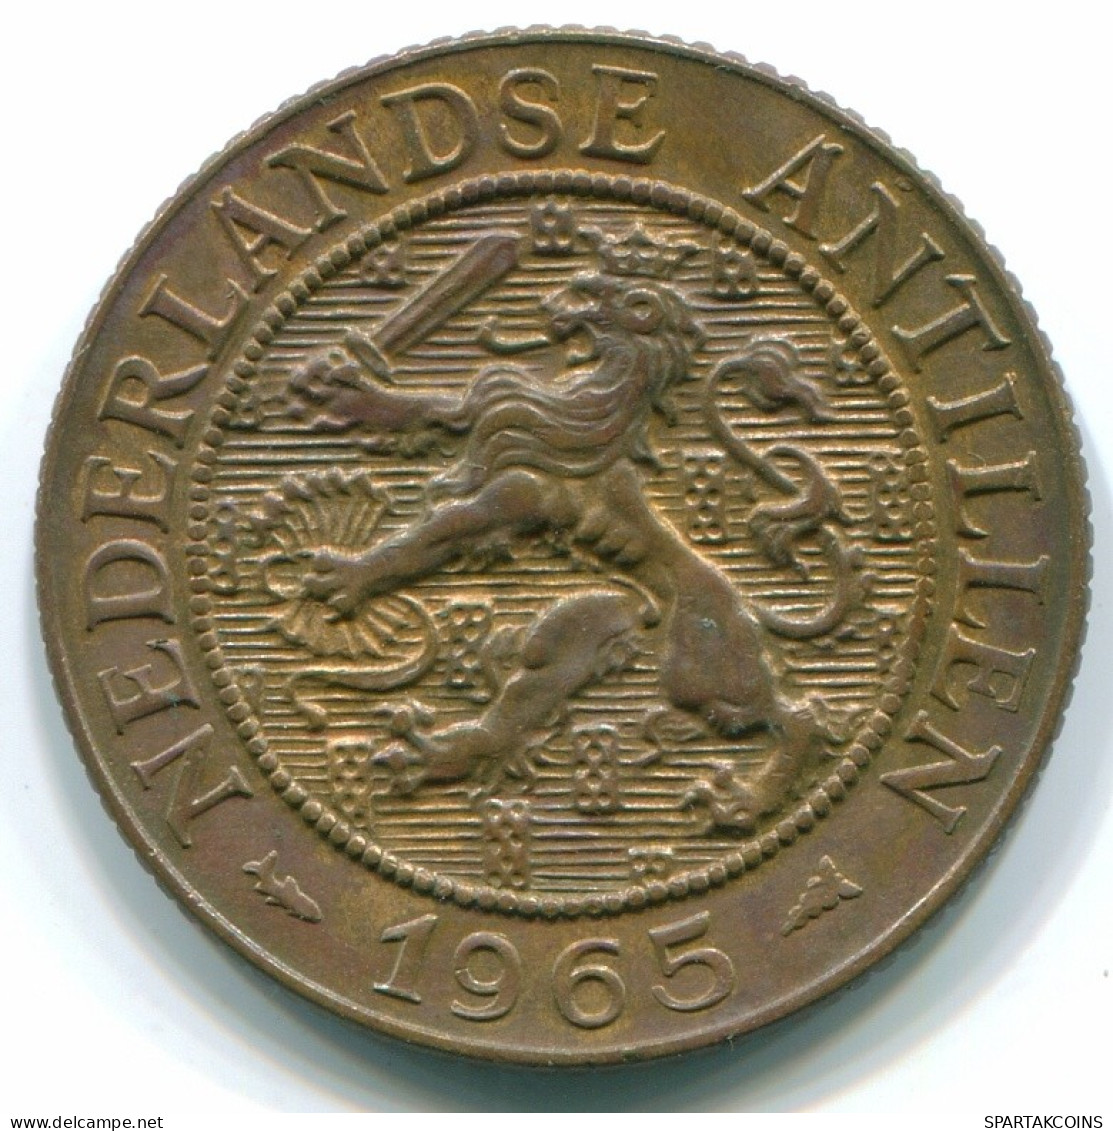 2 1/2 CENT 1965 CURACAO NIEDERLANDE NETHERLANDS Koloniale Münze #S10245.D.A - Curacao